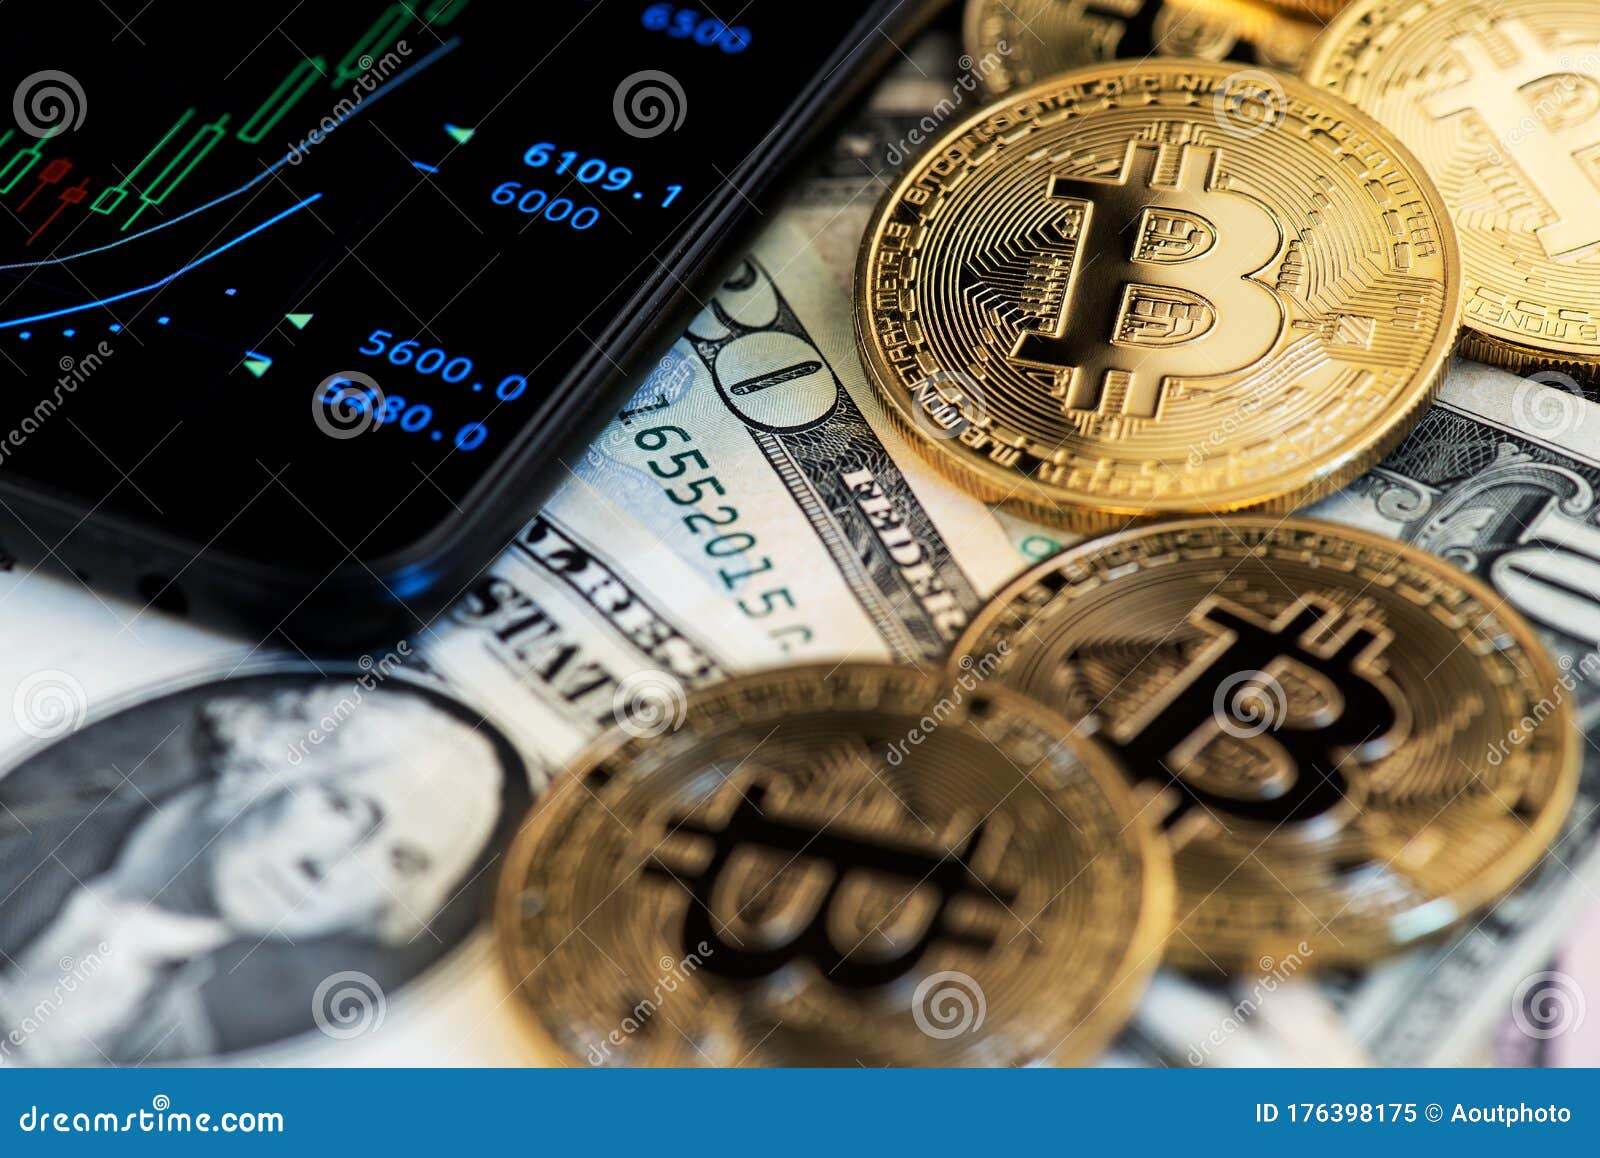 bitcoin to dollaro exchange